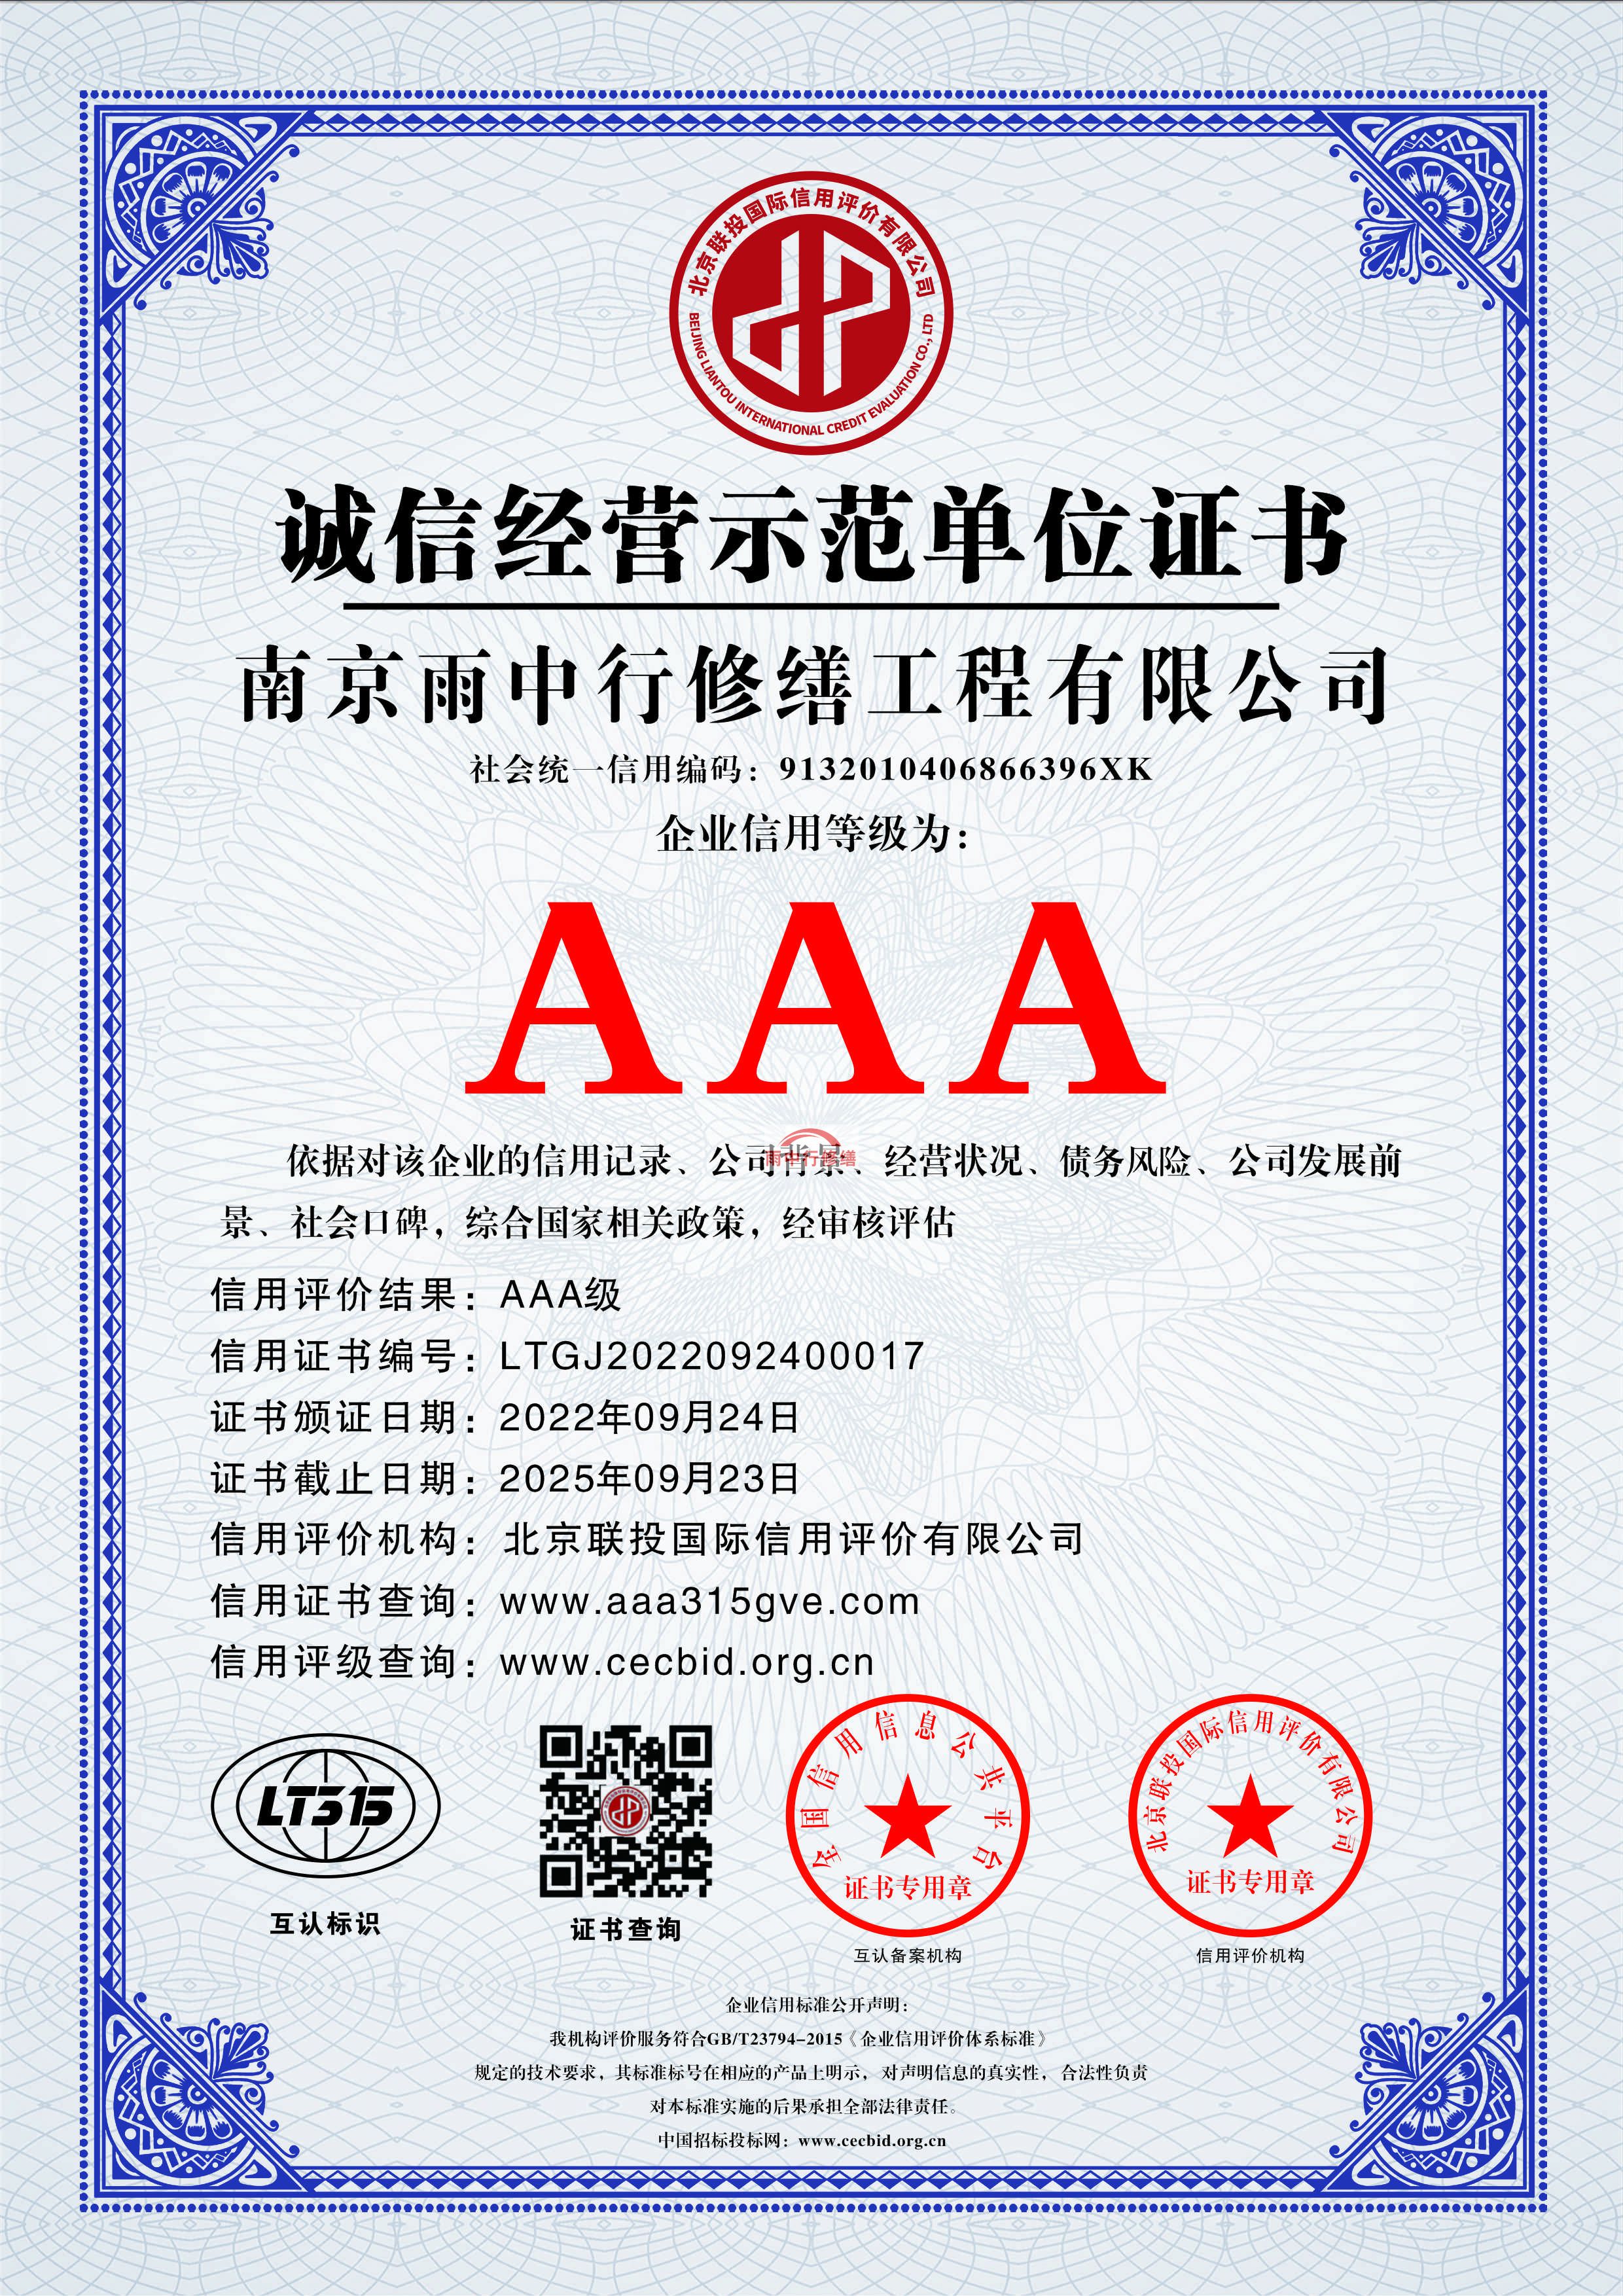 北京雨中行修缮授予AAA级企业